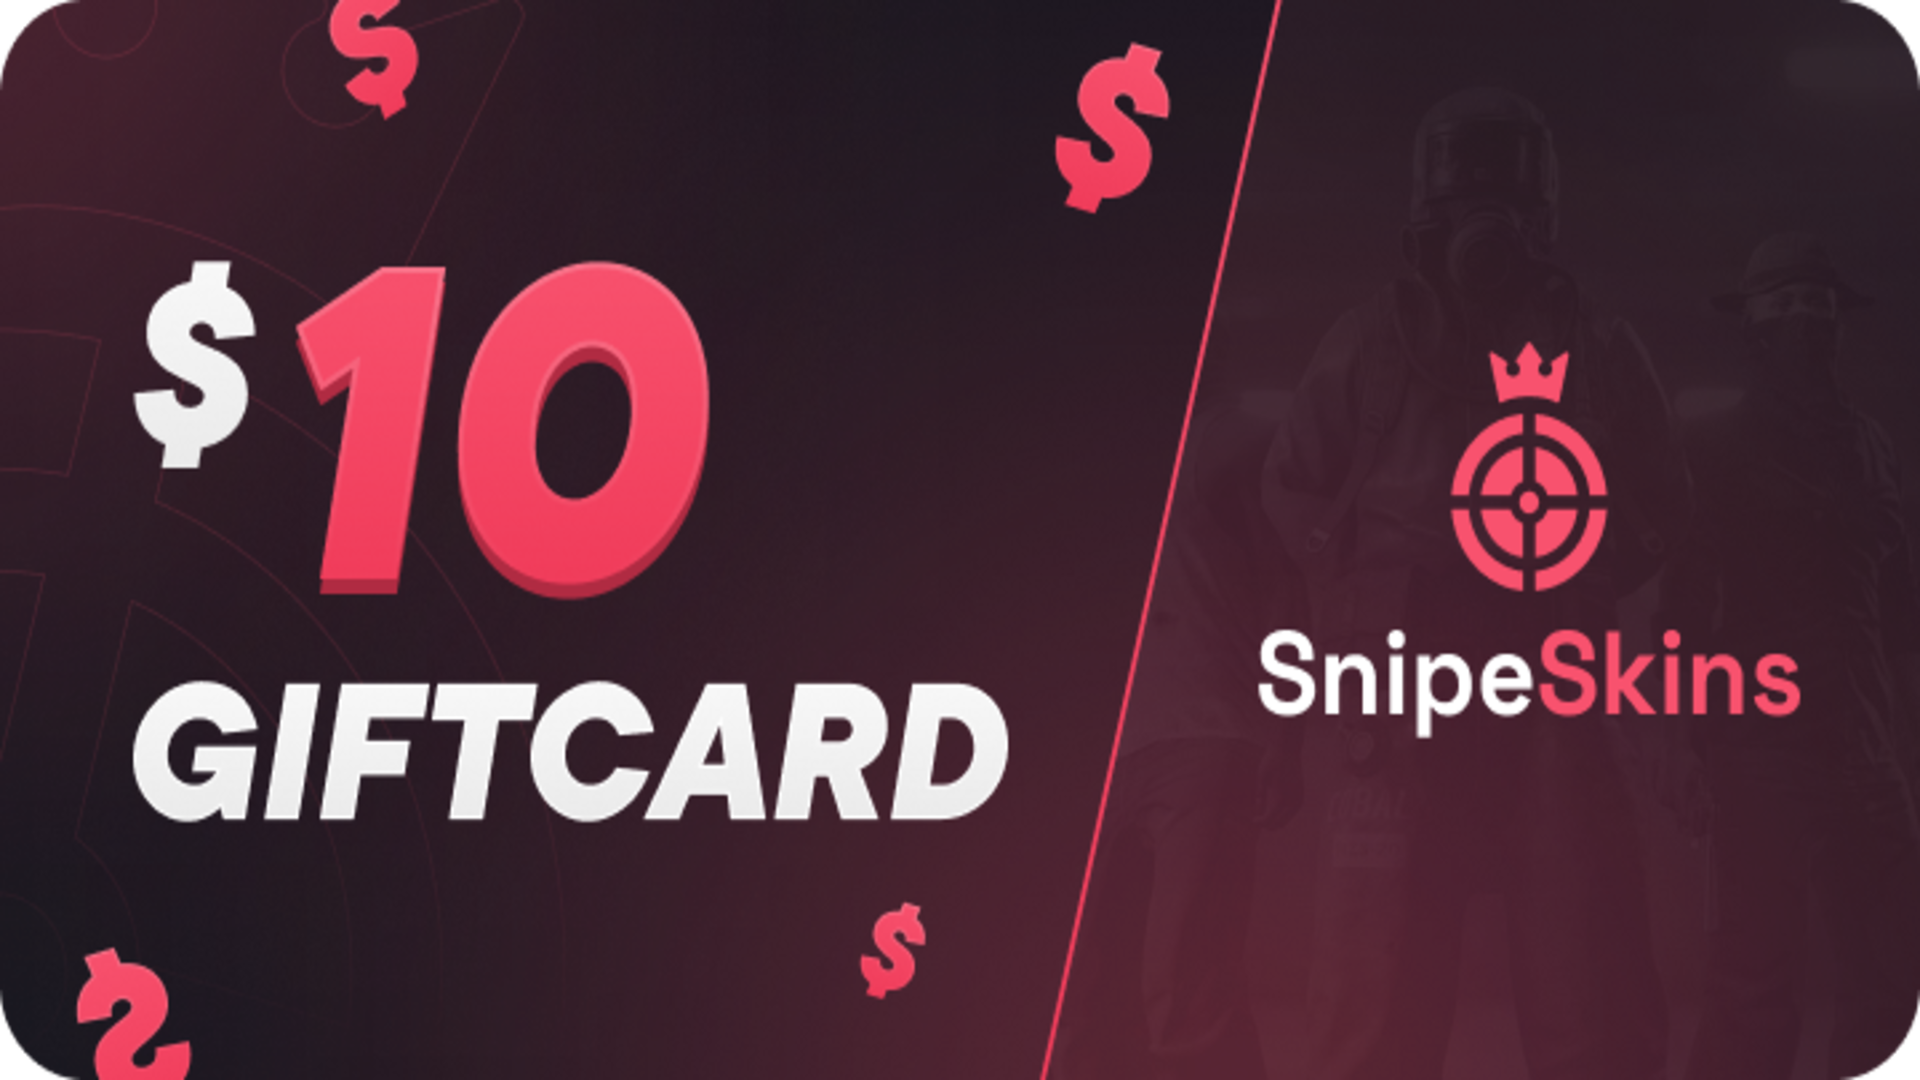 [$ 12.52] SnipeSkins $10 Gift Card